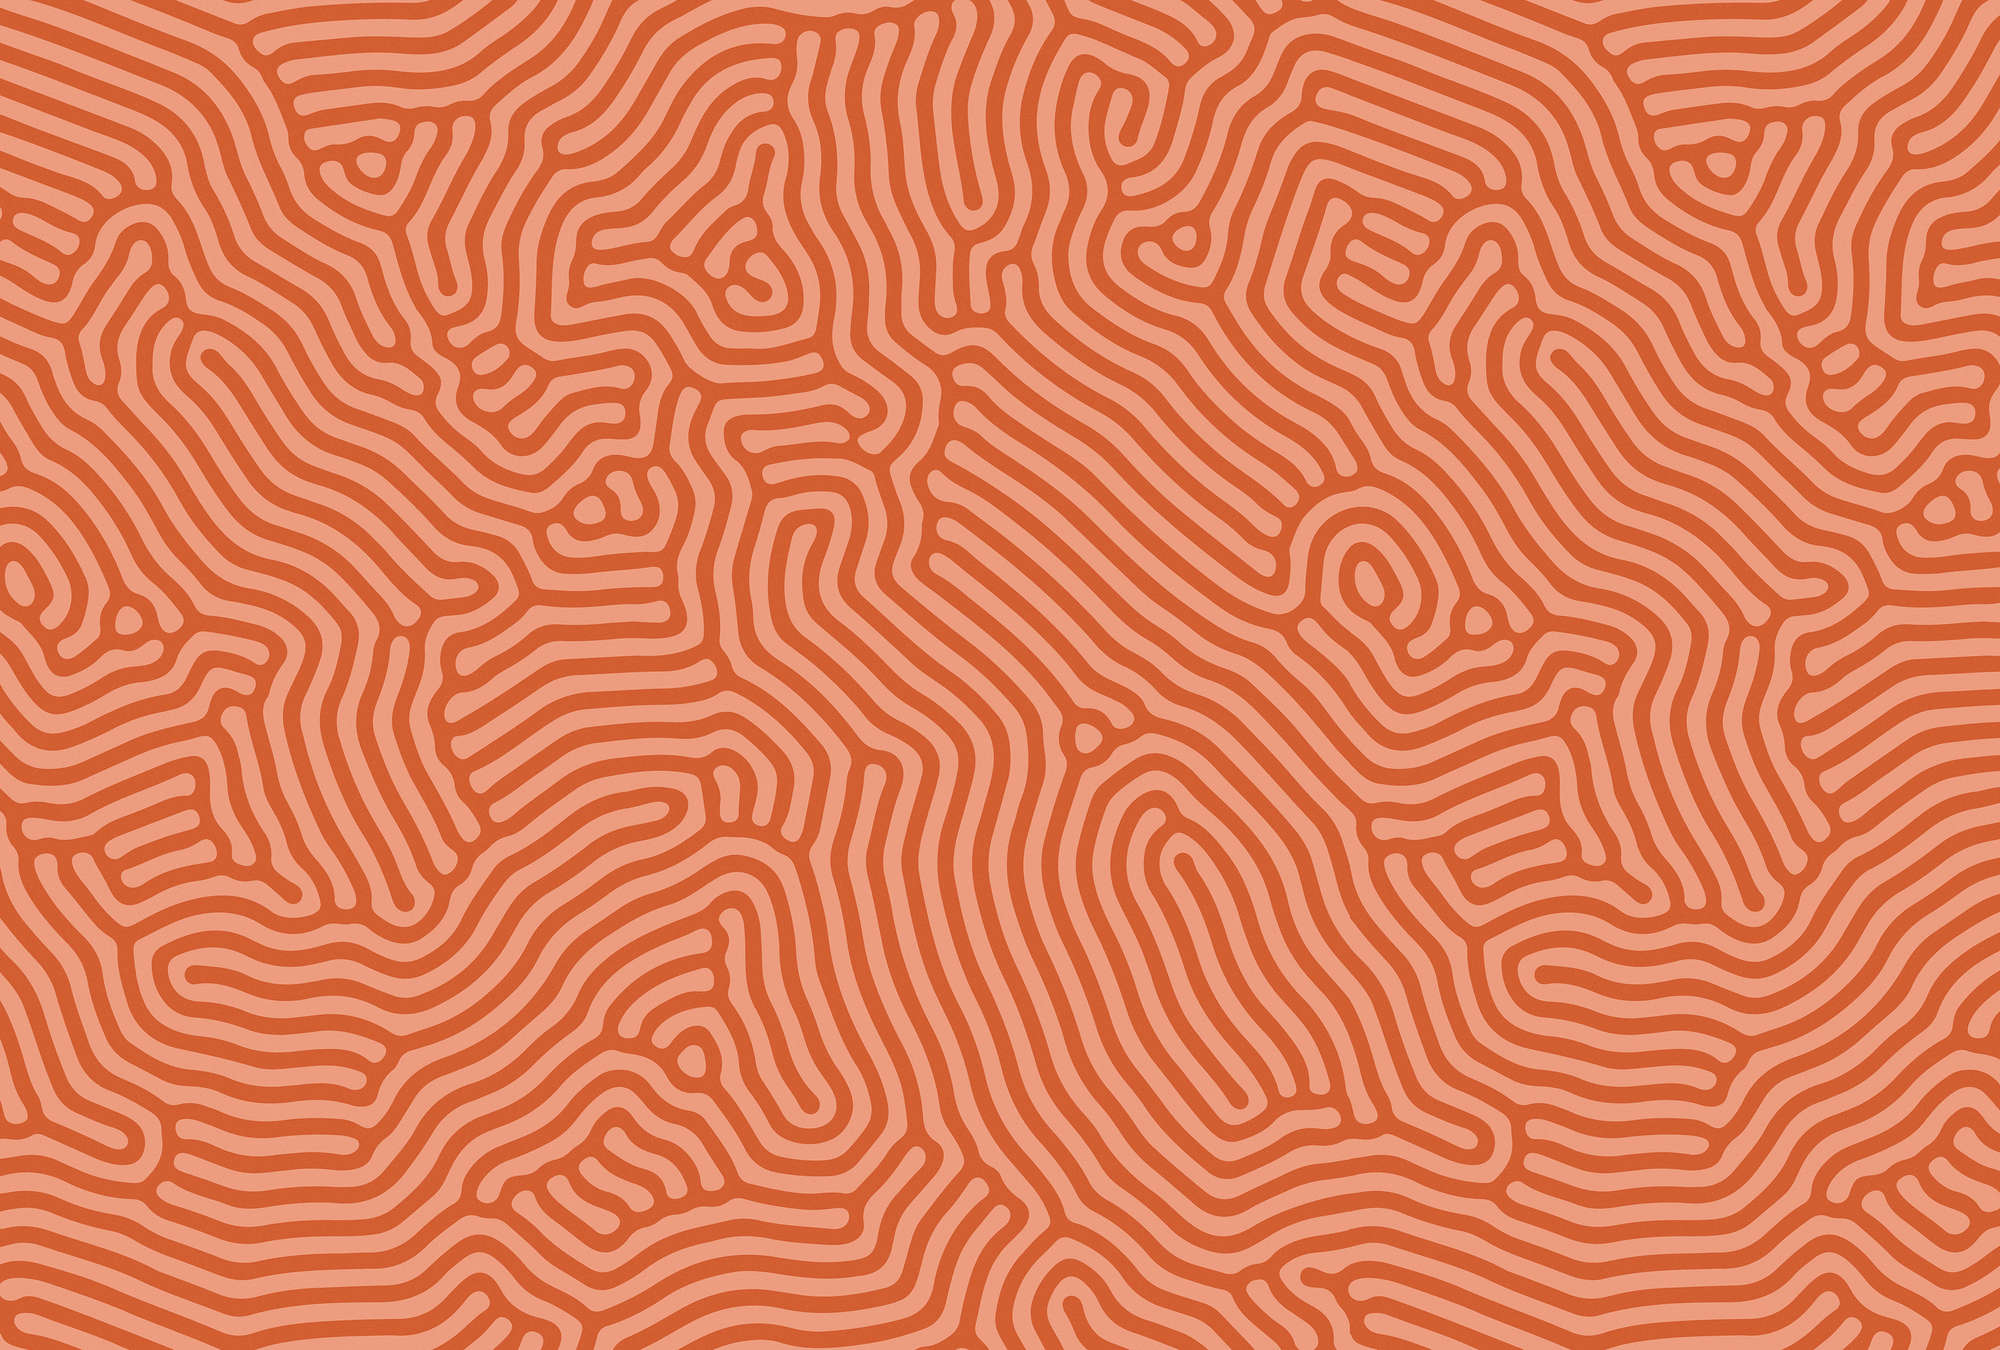             Sahel 3 - Papier peint rouge avec motif de lignes organiques
        